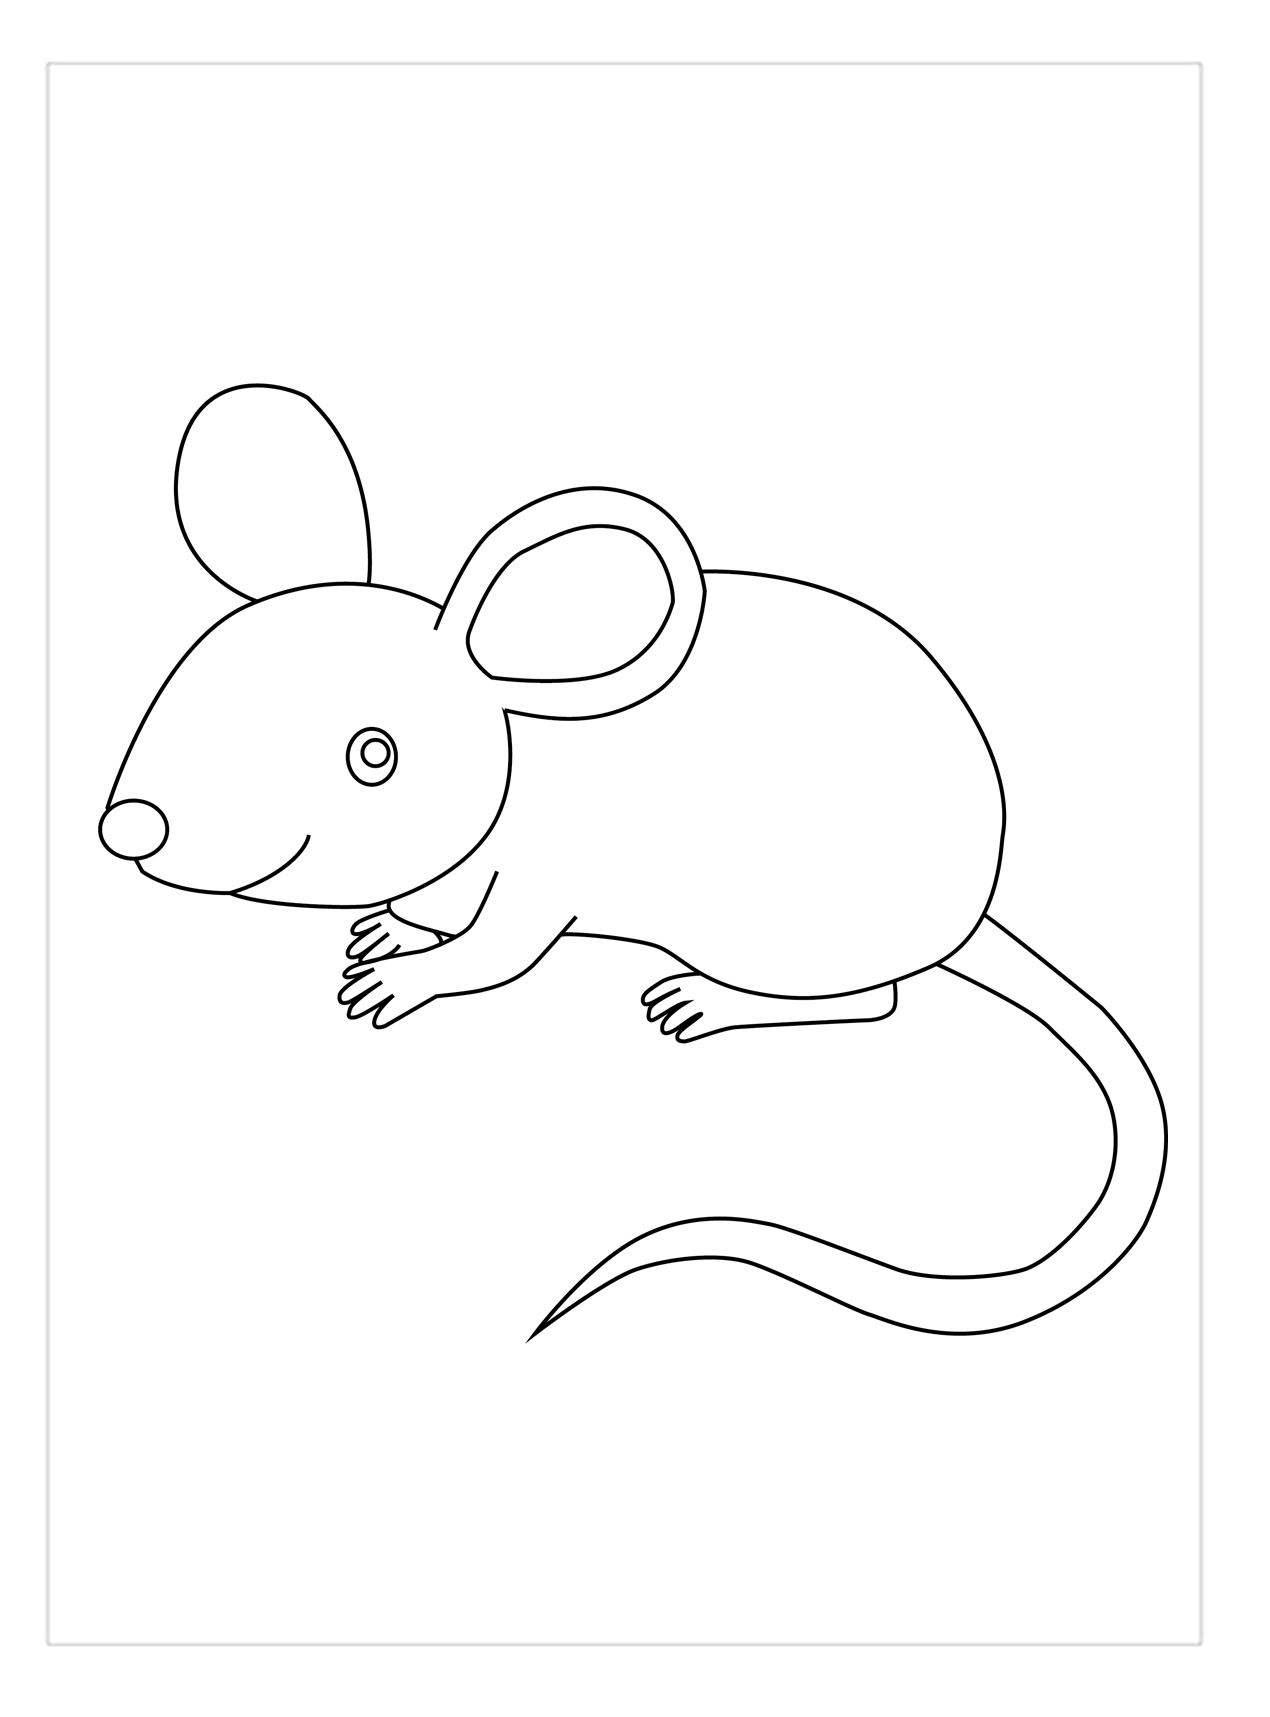 Tranh tô màu sắc con cái con chuột đẹp mắt, đơn giản